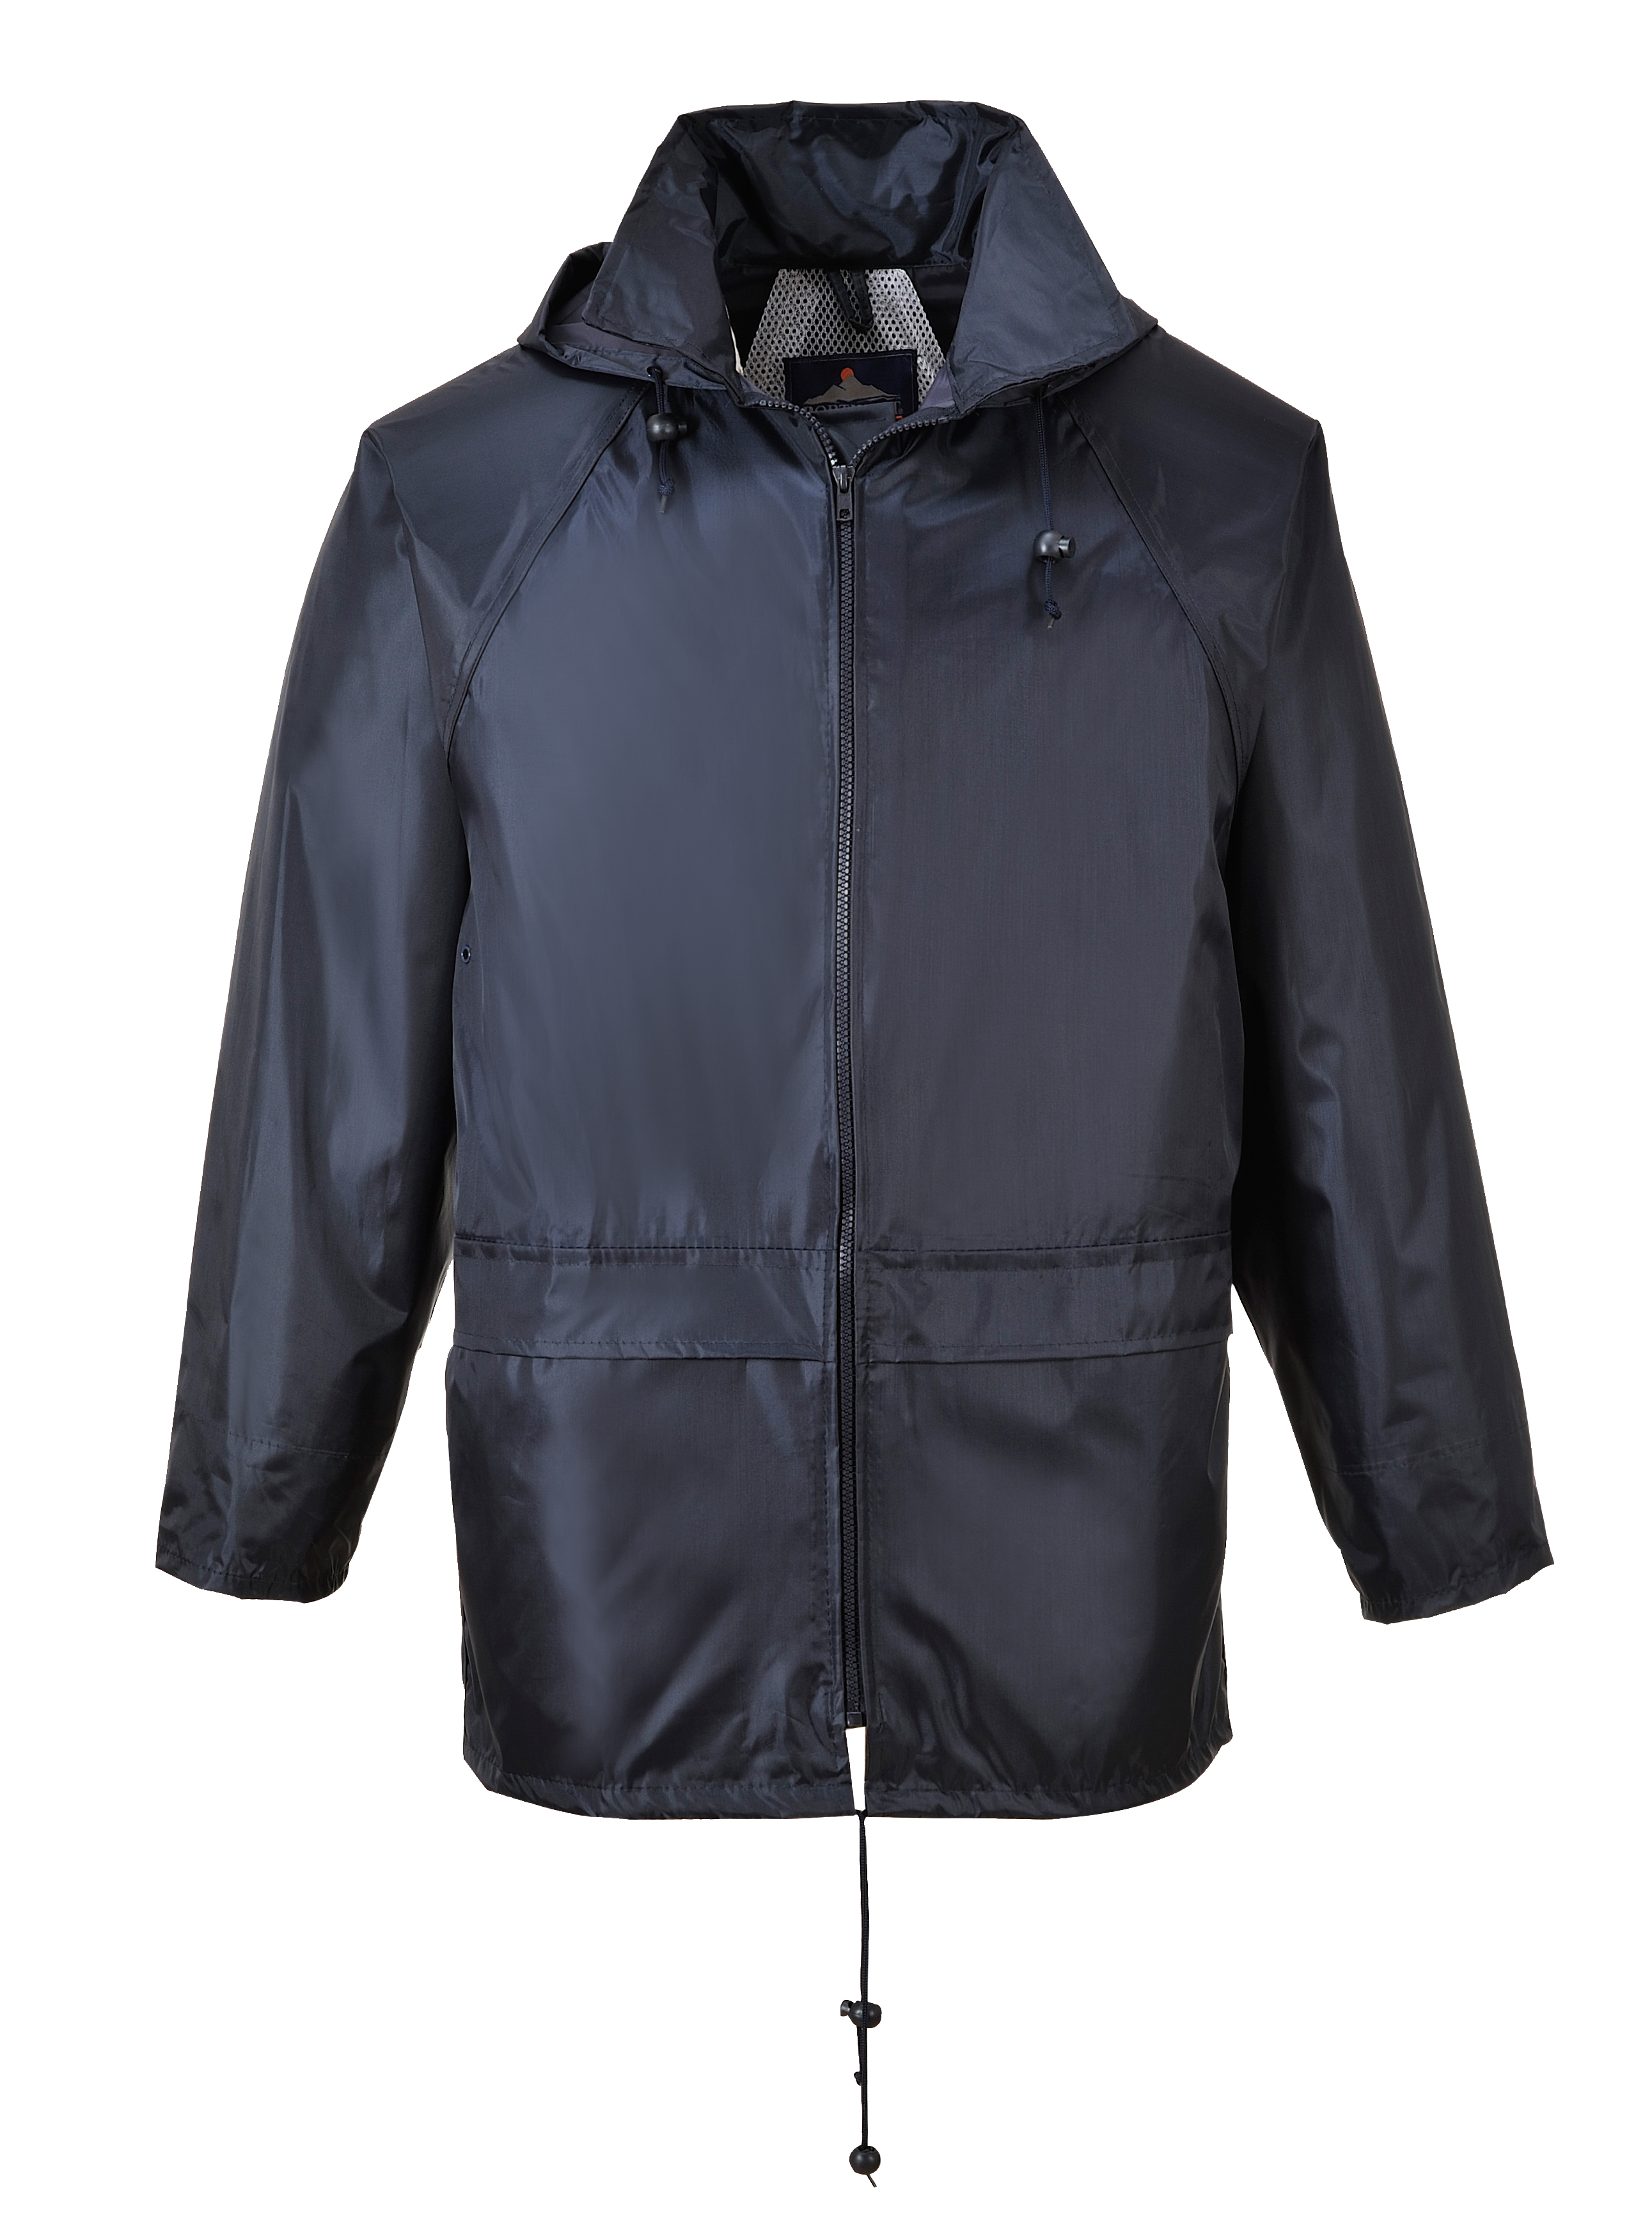 ax-portwest-classic-rain-jacket-navy_vwgmxmgcq06lbw68.jpeg